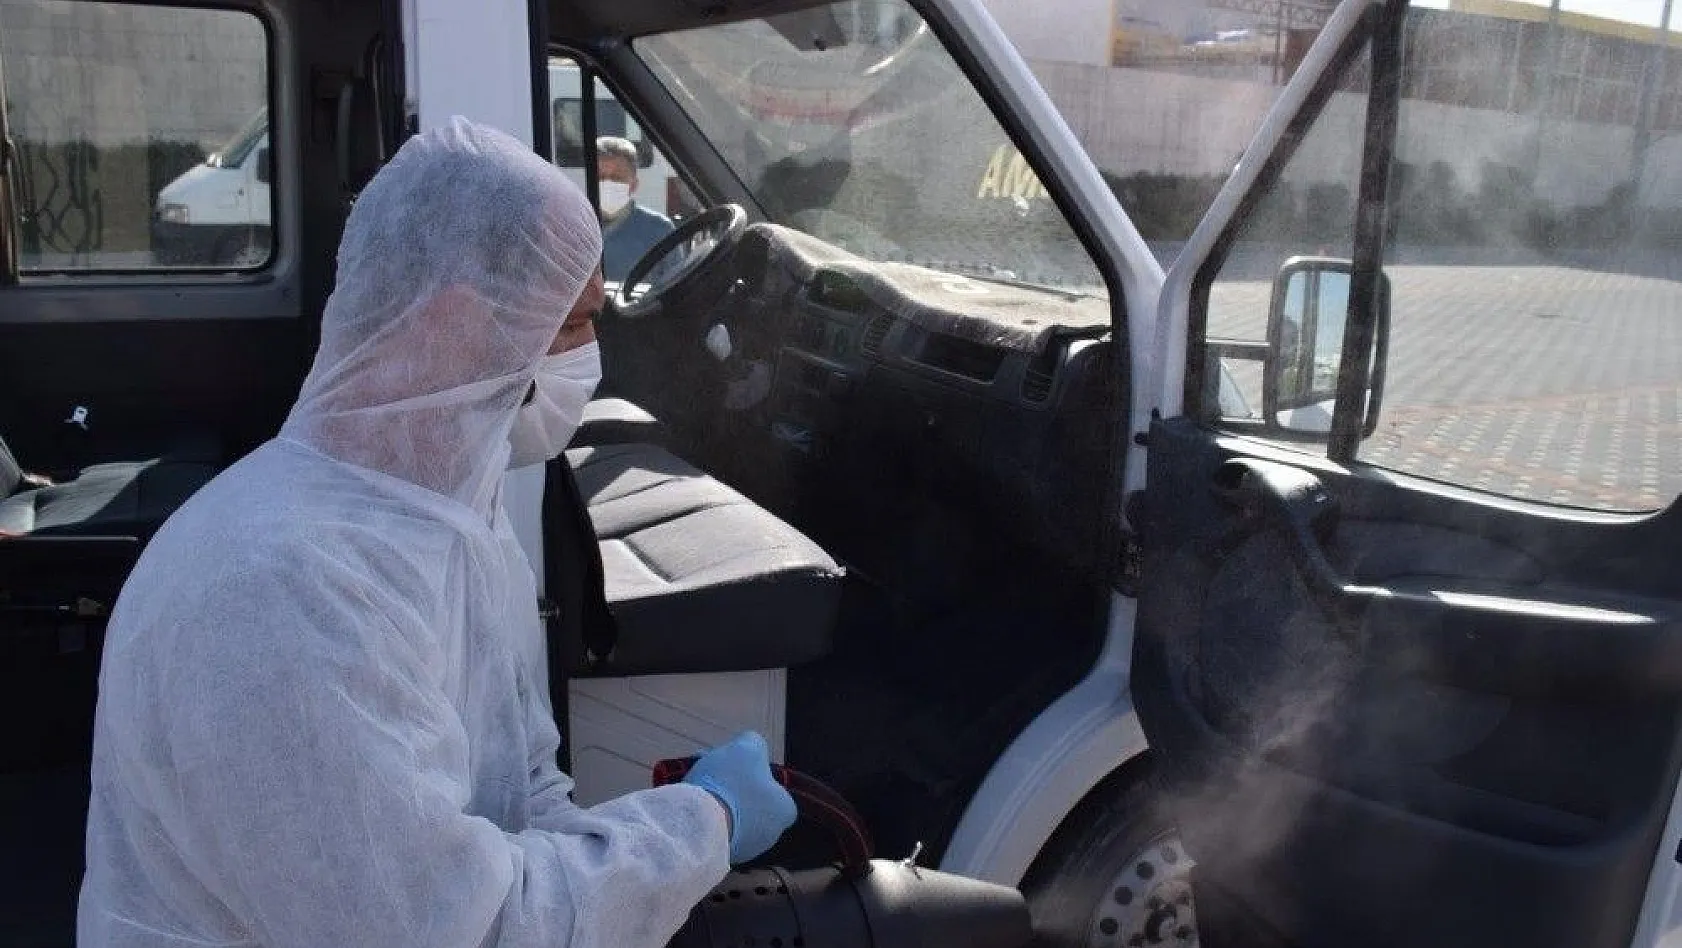 Kayseri OSB, Korona virüse karşı servis araçlarını ücretsiz dezenfekte ediyor